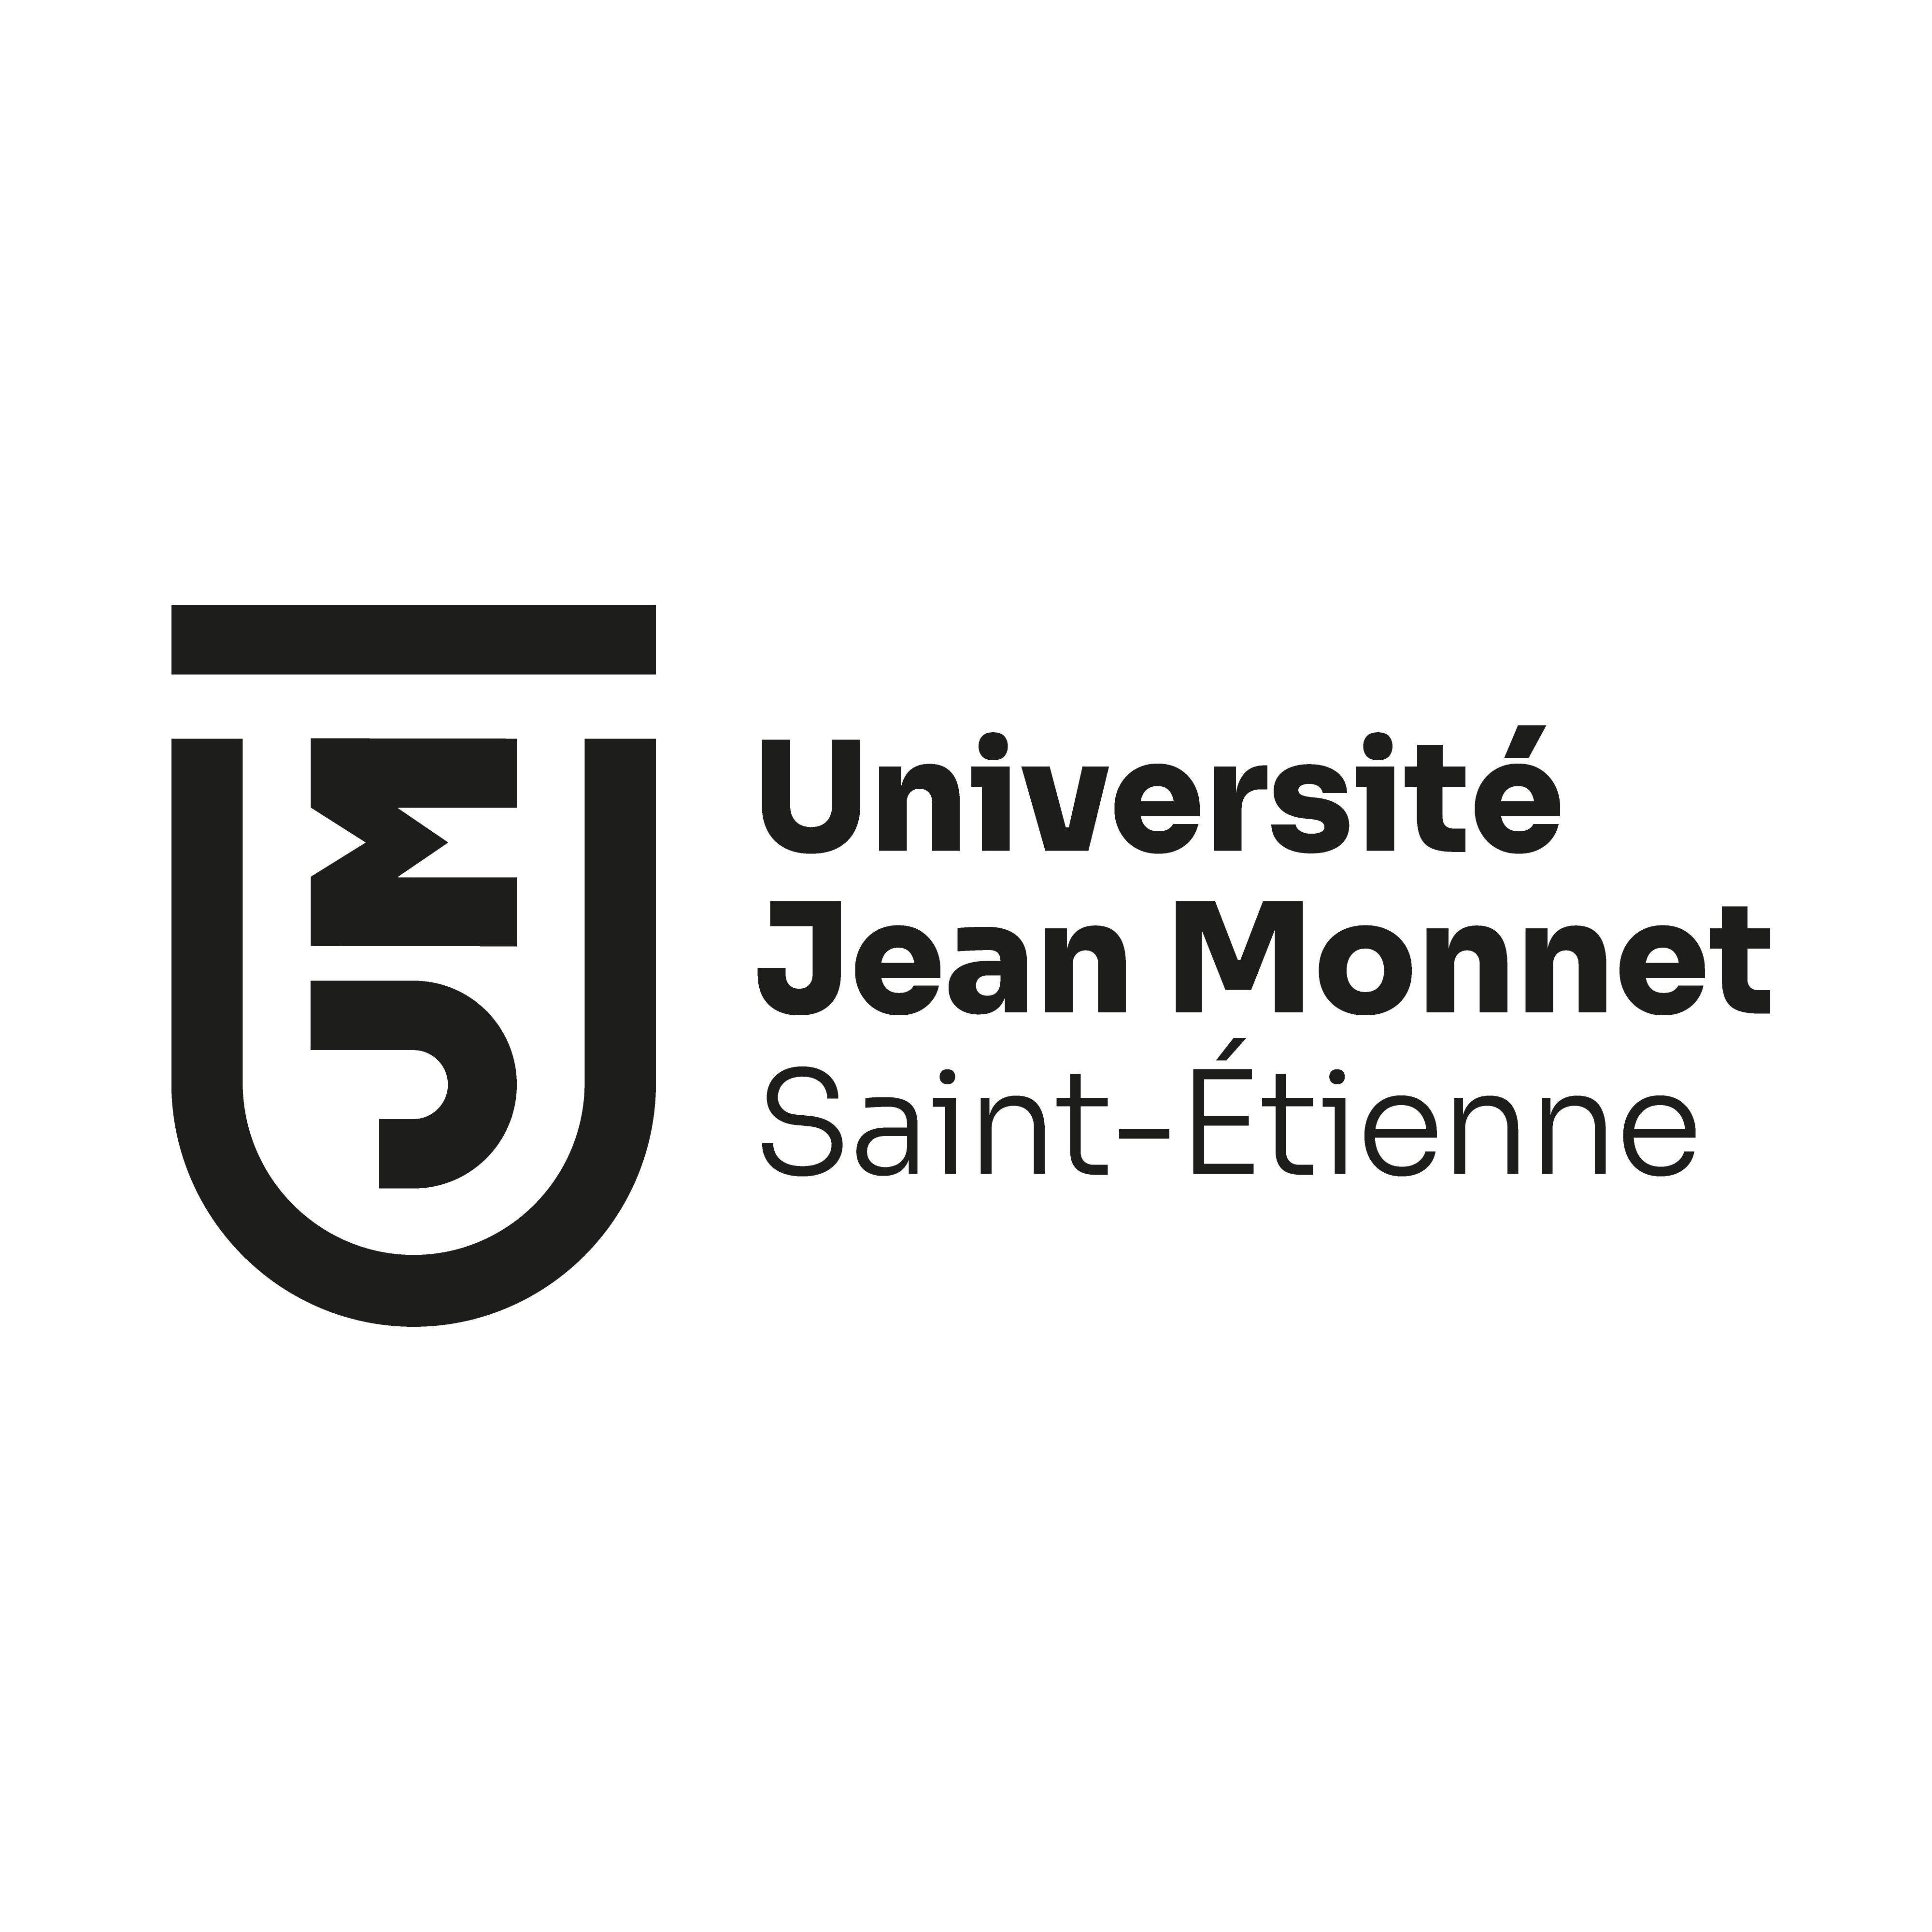 Universite Jean Monnet SaintEtienne